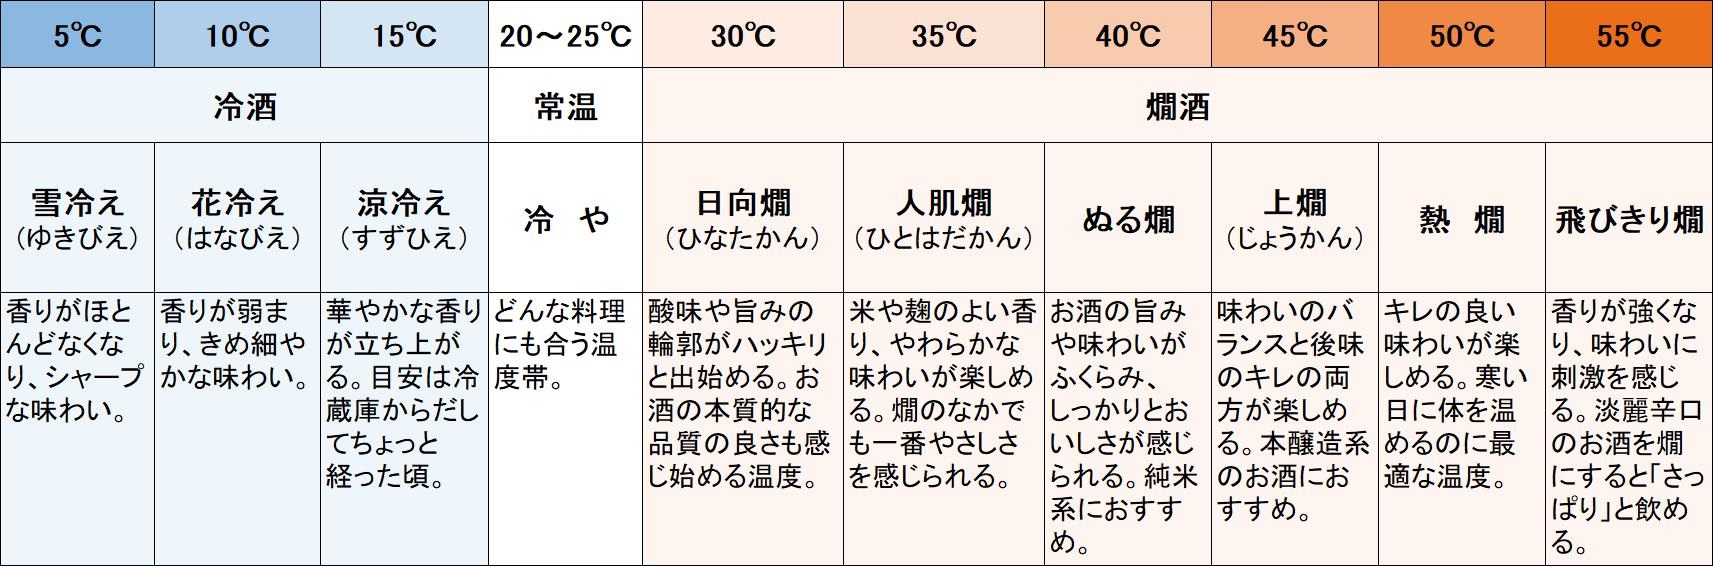 日本酒の温度